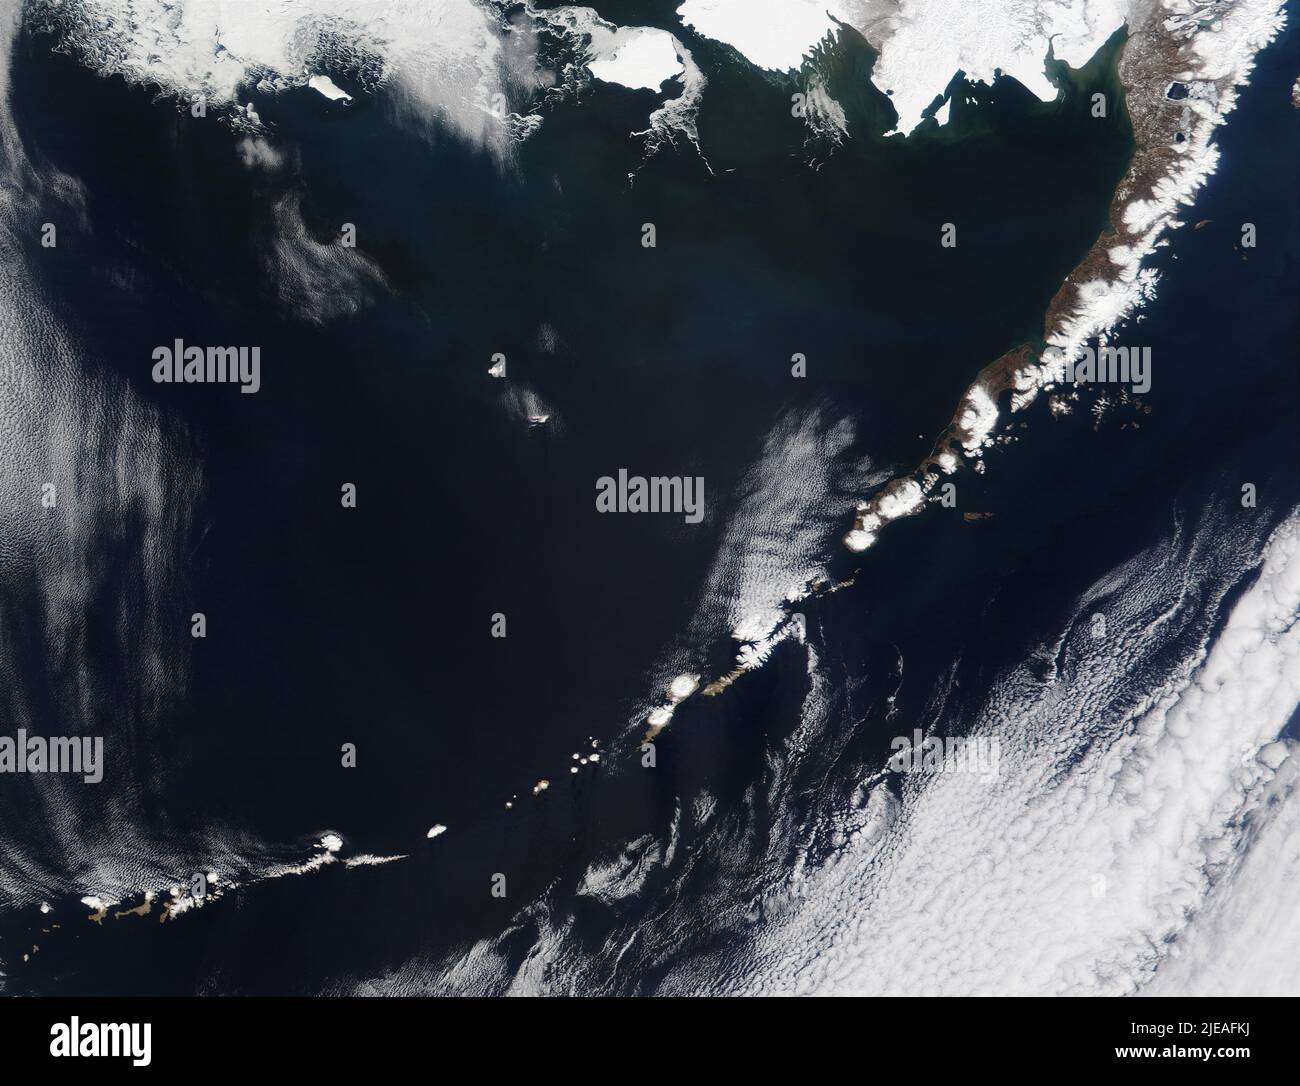 Islas Aleutianas de Alaska, borde norte del Anillo de Fuego del Pacífico. Los parches circulares blancos de algunos de los cráteres llenos de nieve de los volcanes pueden ser s. Foto de stock